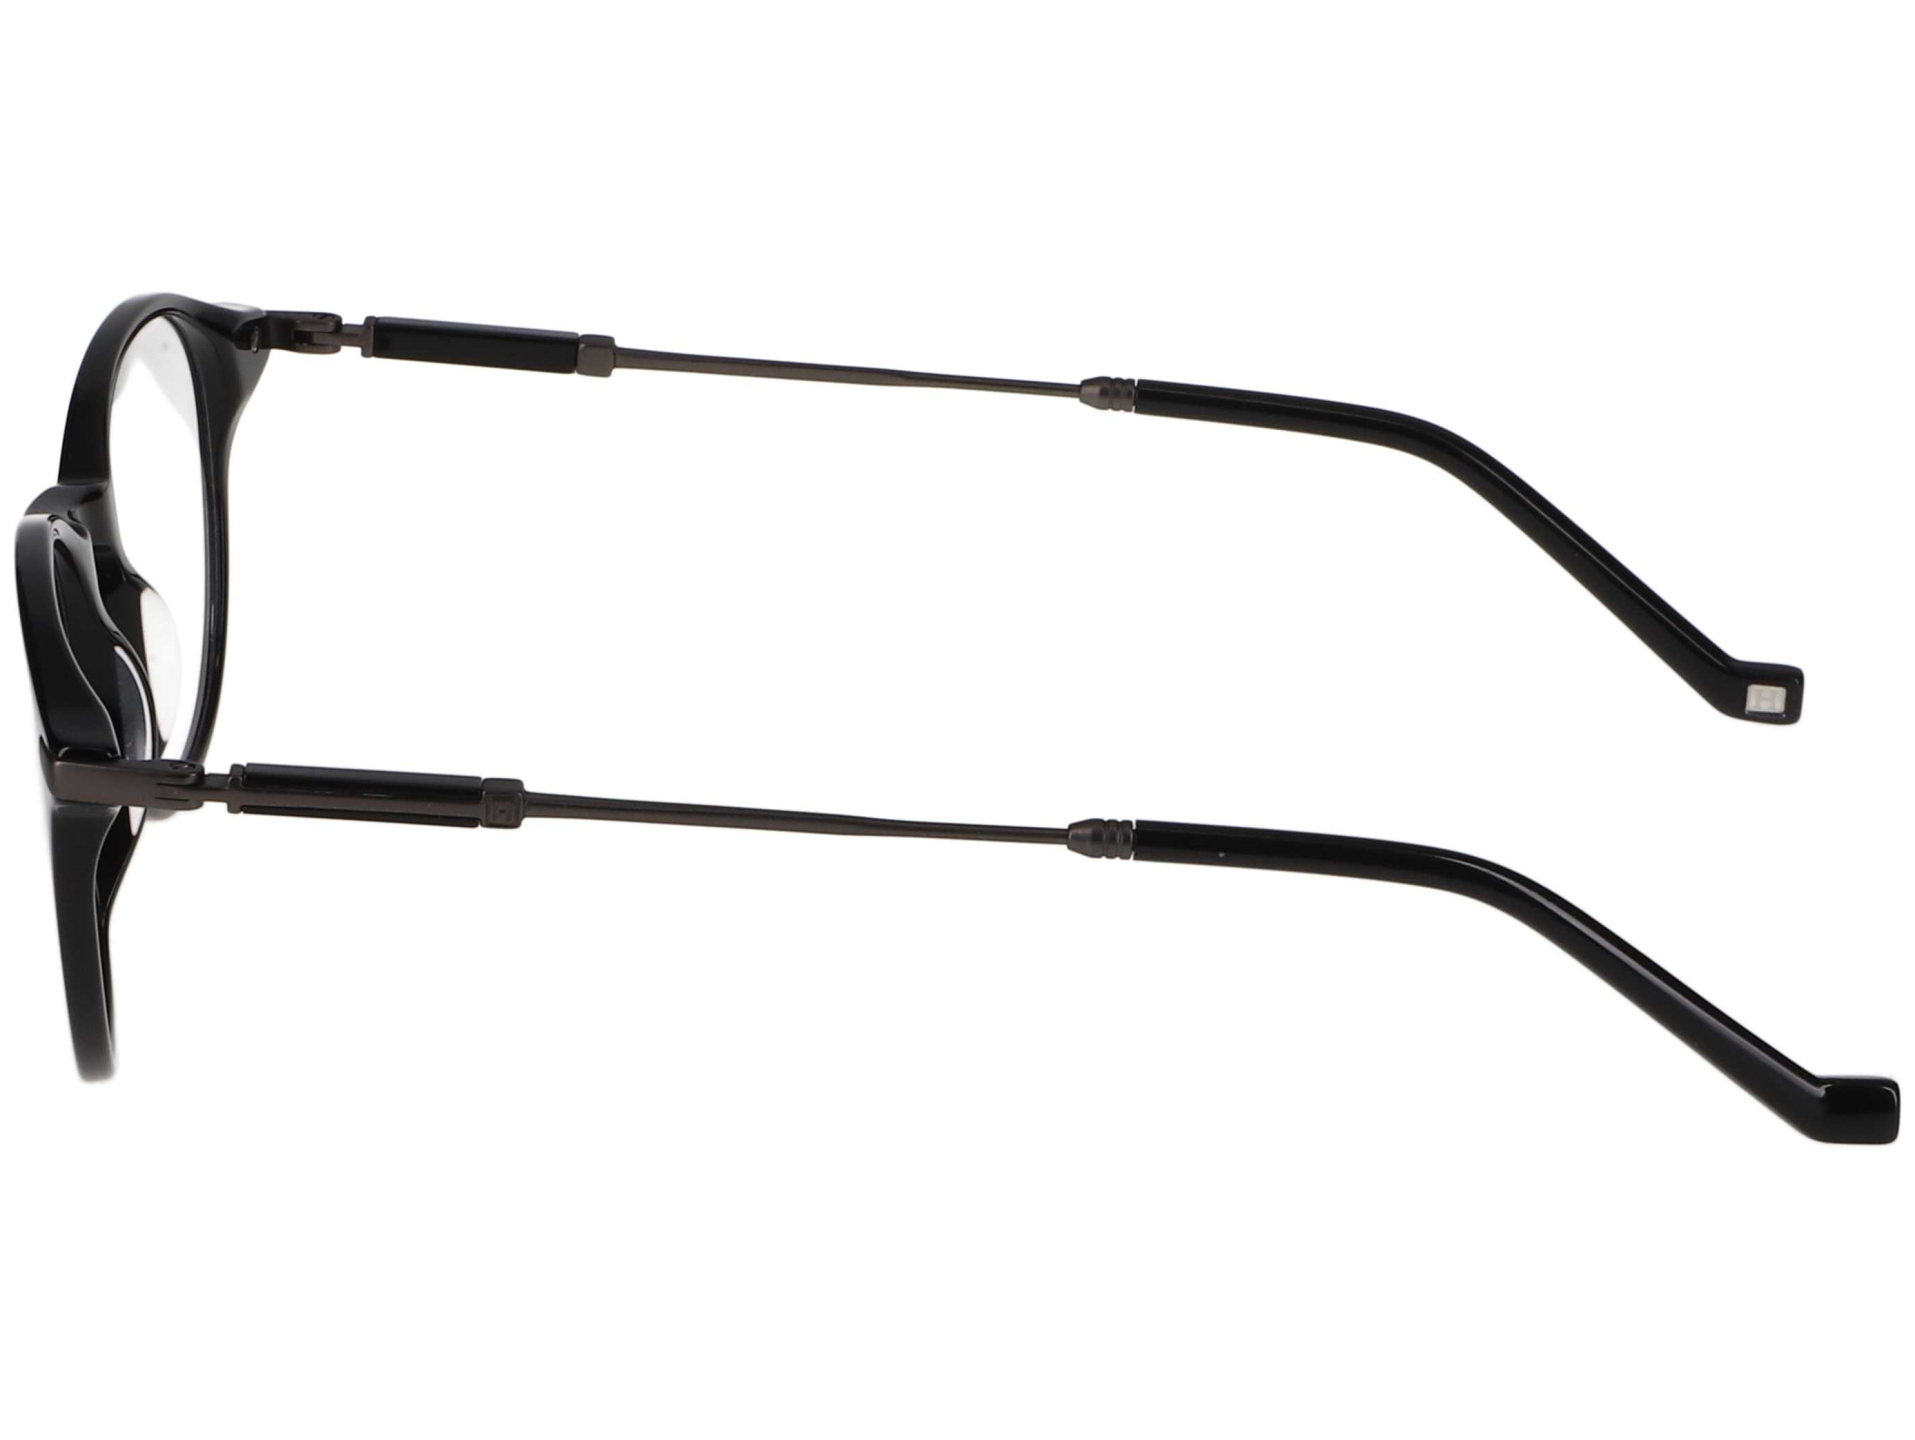 Das Bild zeigt die Korrektionsbrille 332 001 von der Marke Hackett in schwarz.